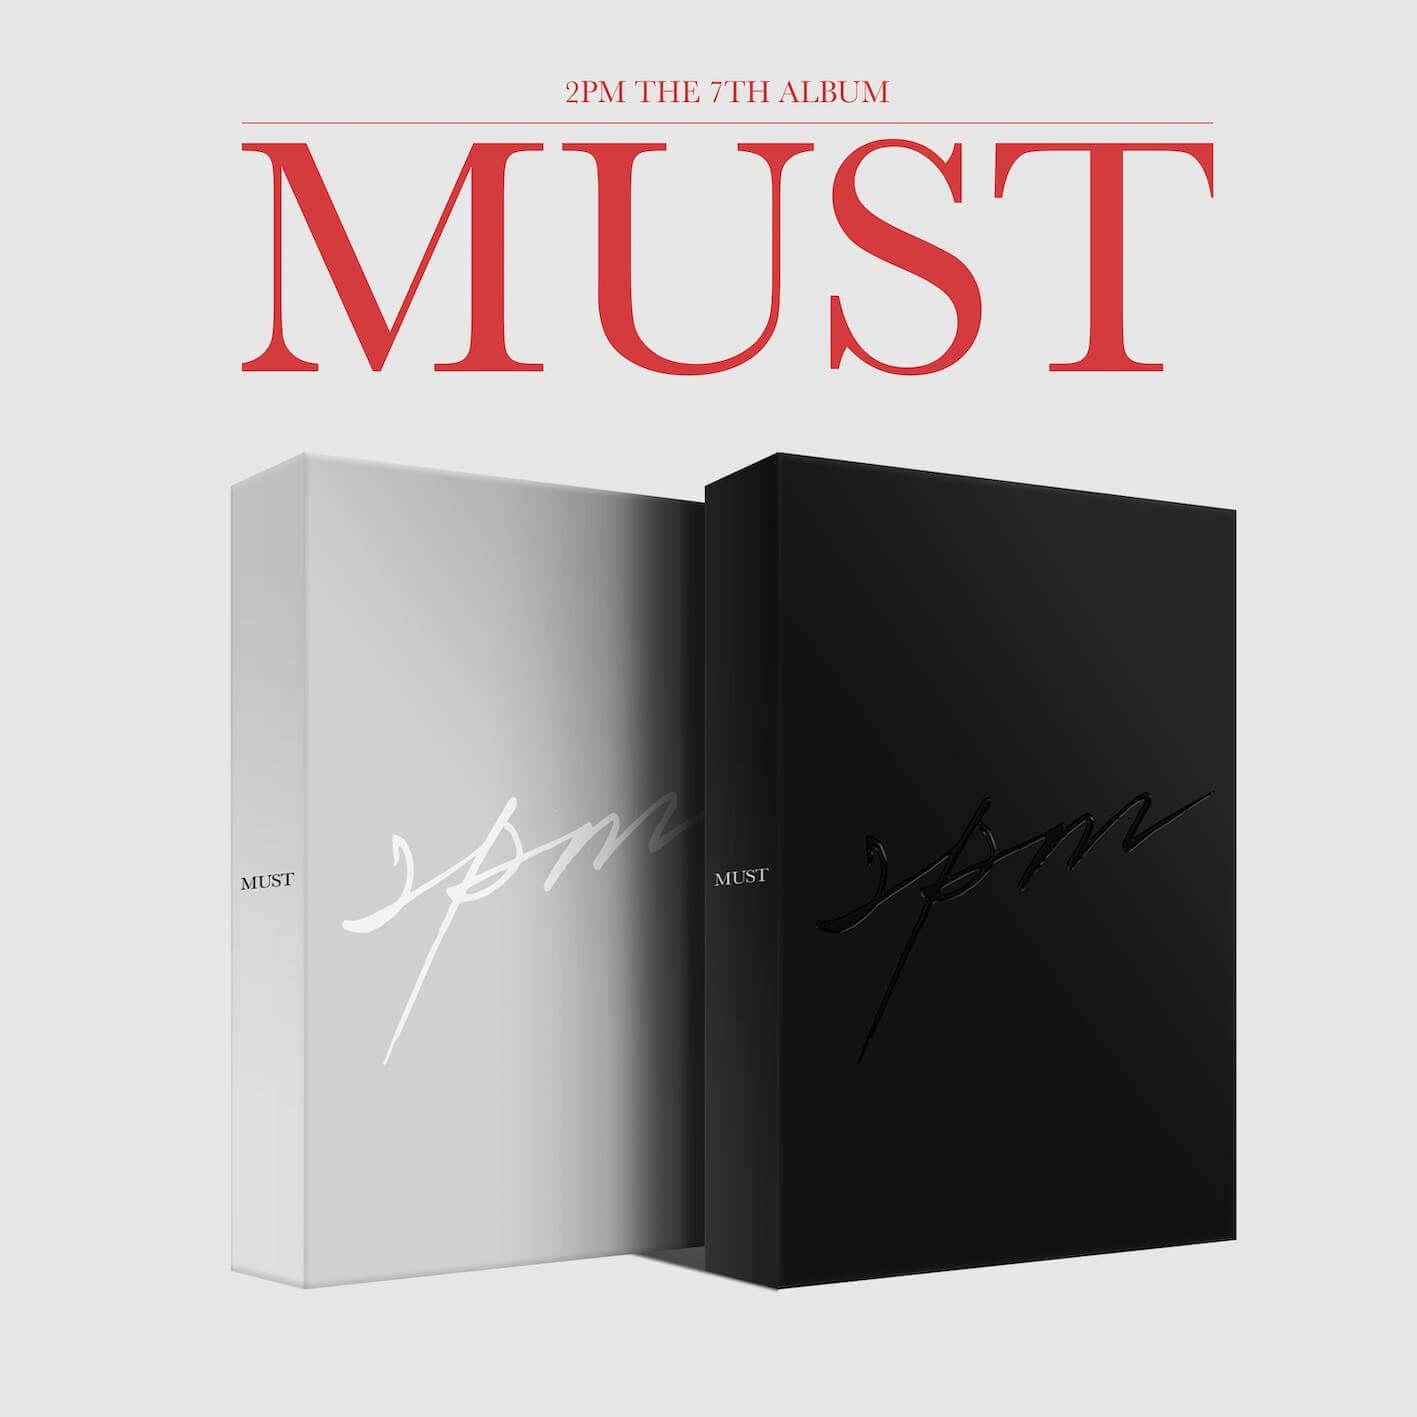 2PM - 7th Album - Must